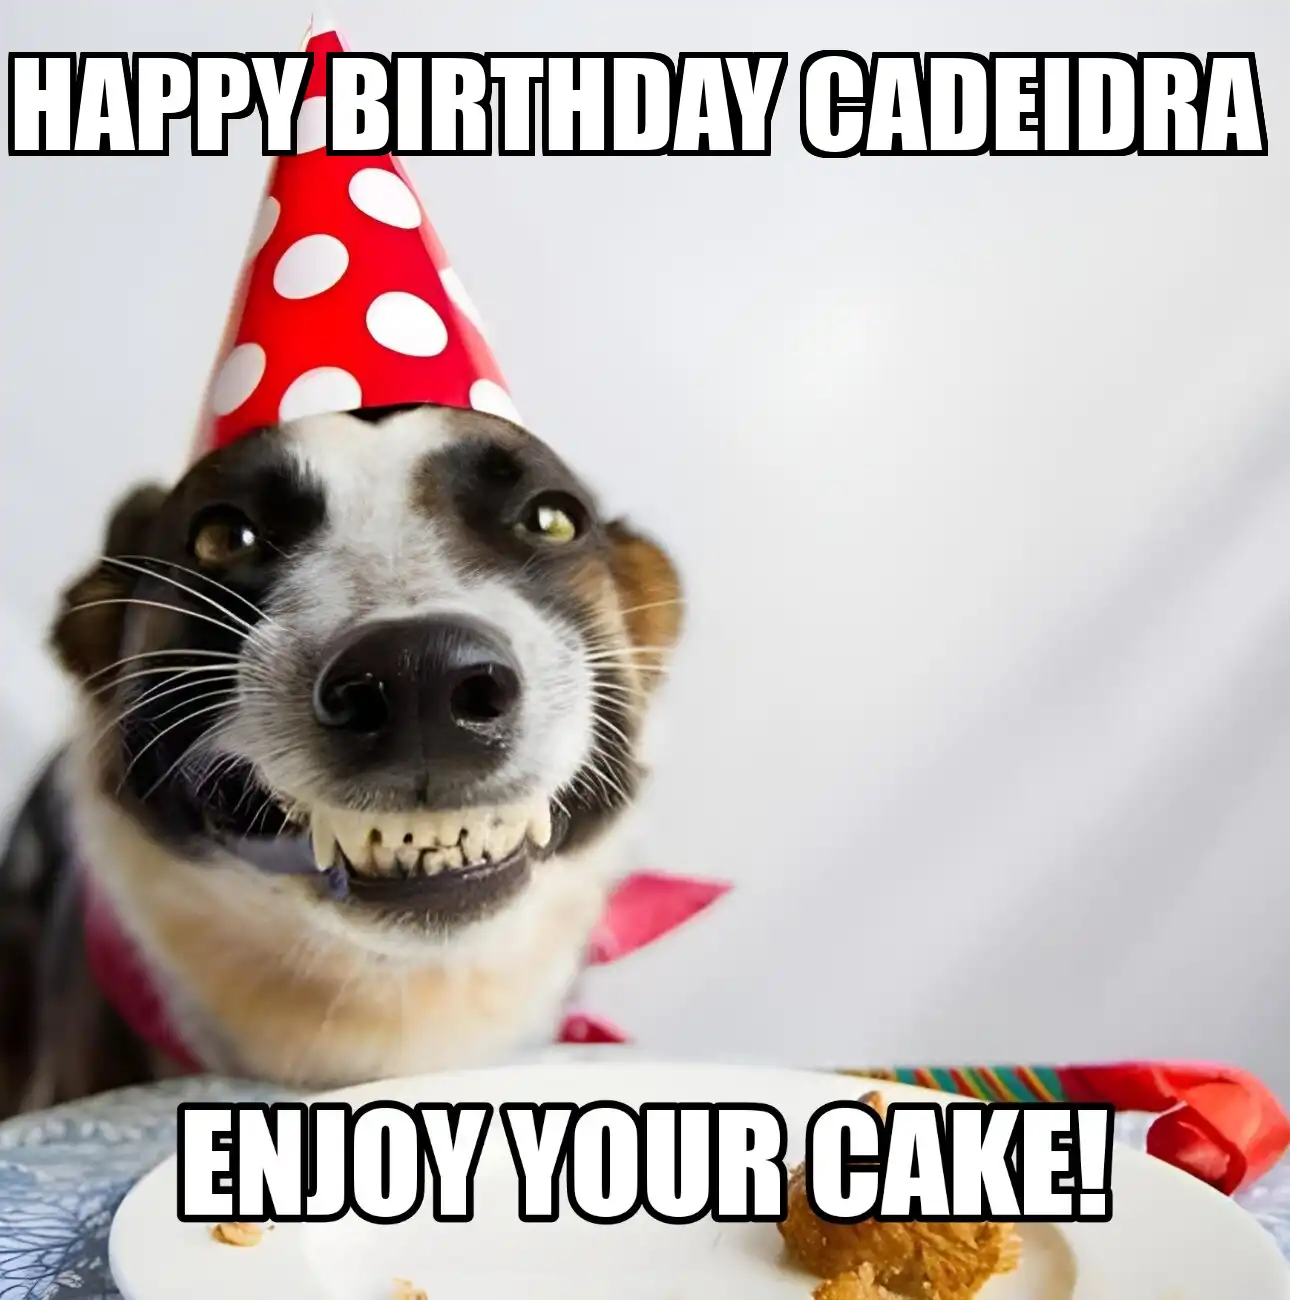 Happy Birthday Cadeidra Enjoy Your Cake Dog Meme